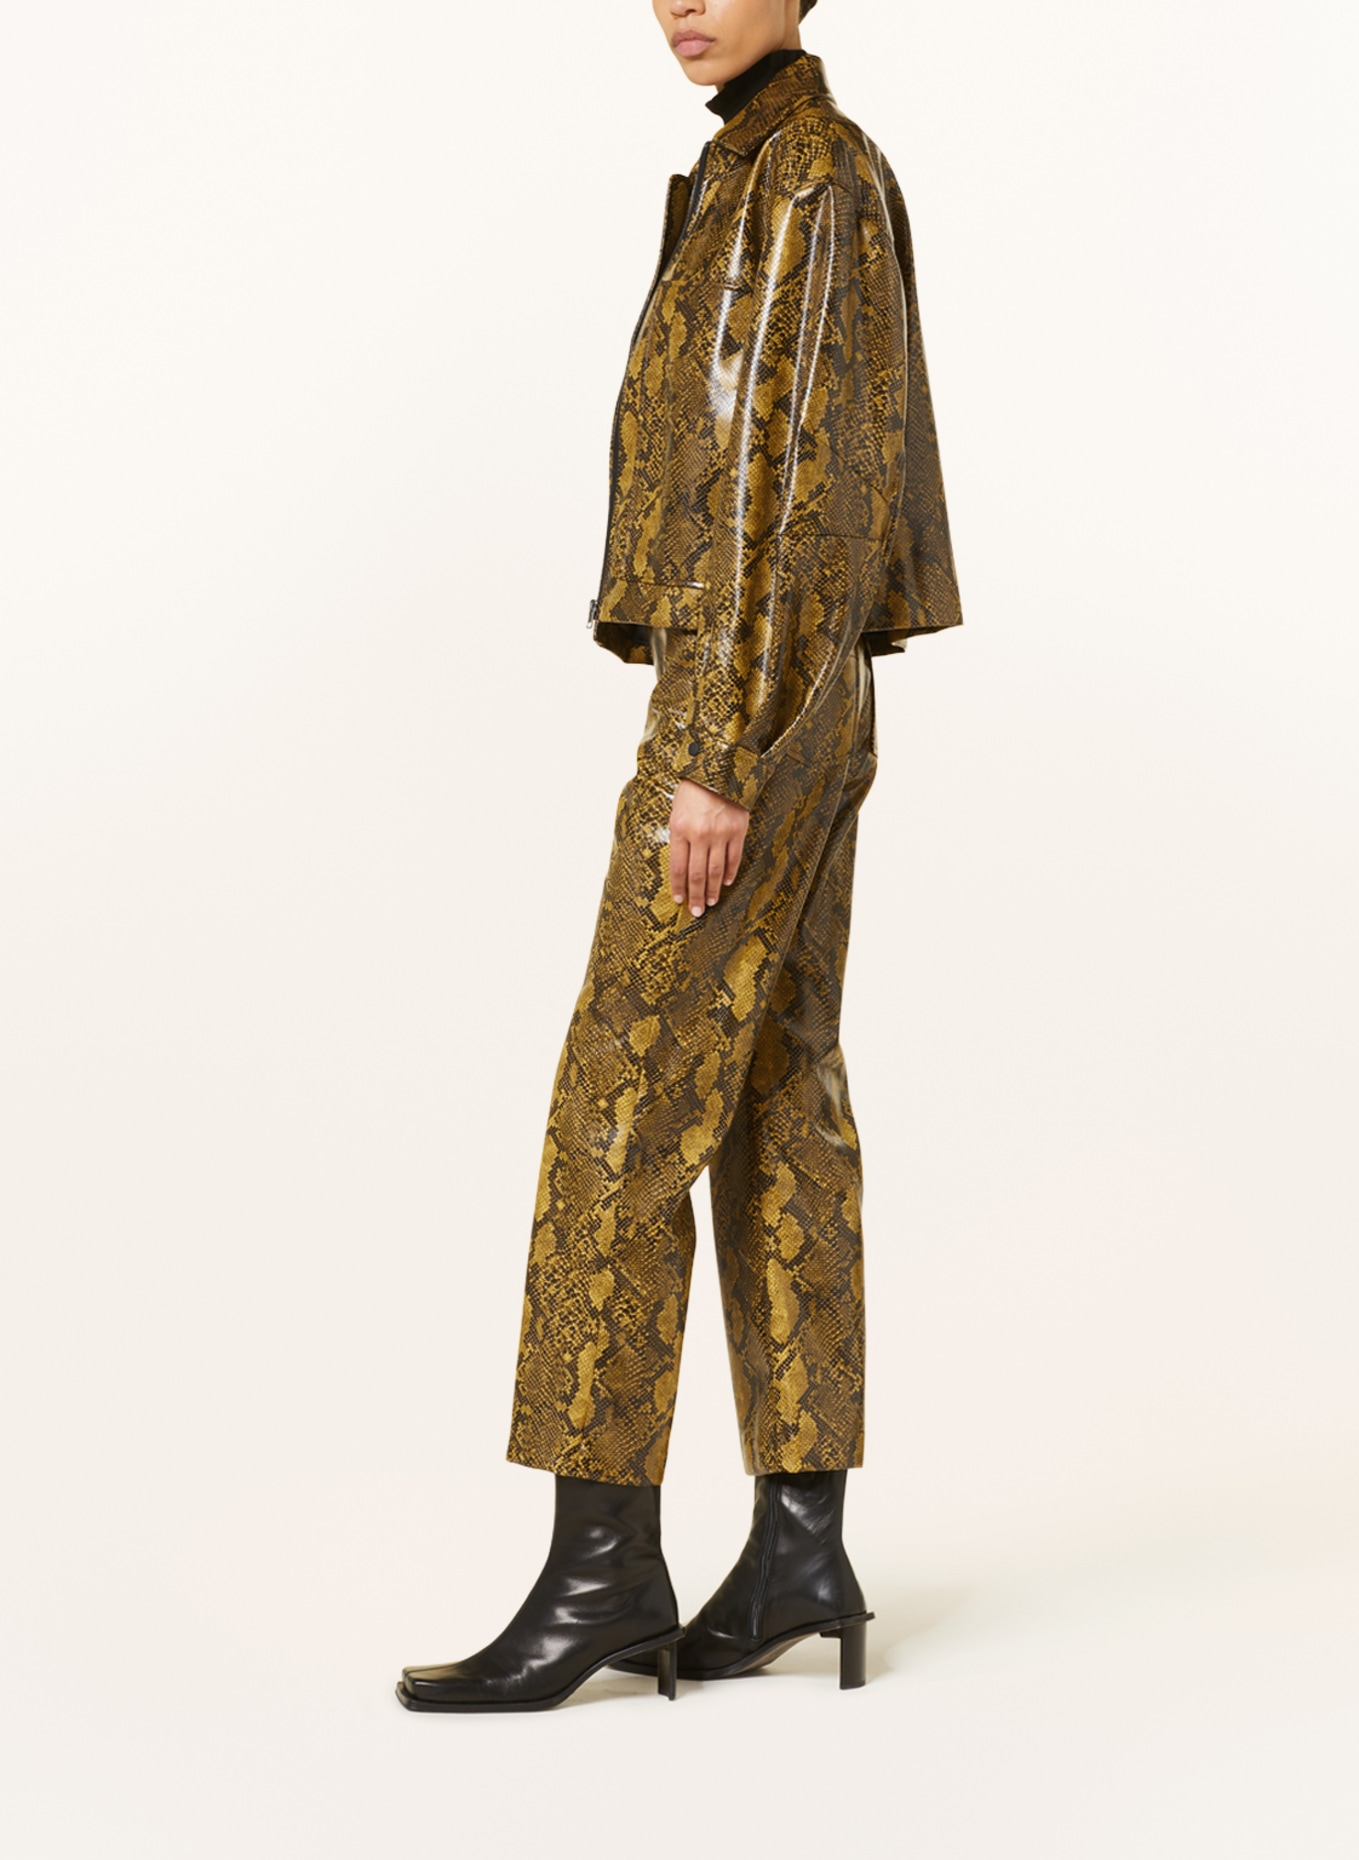 BAUM UND PFERDGARTEN 7/8 trousers NORMA in leather look, Color: DARK YELLOW/ BLACK (Image 4)